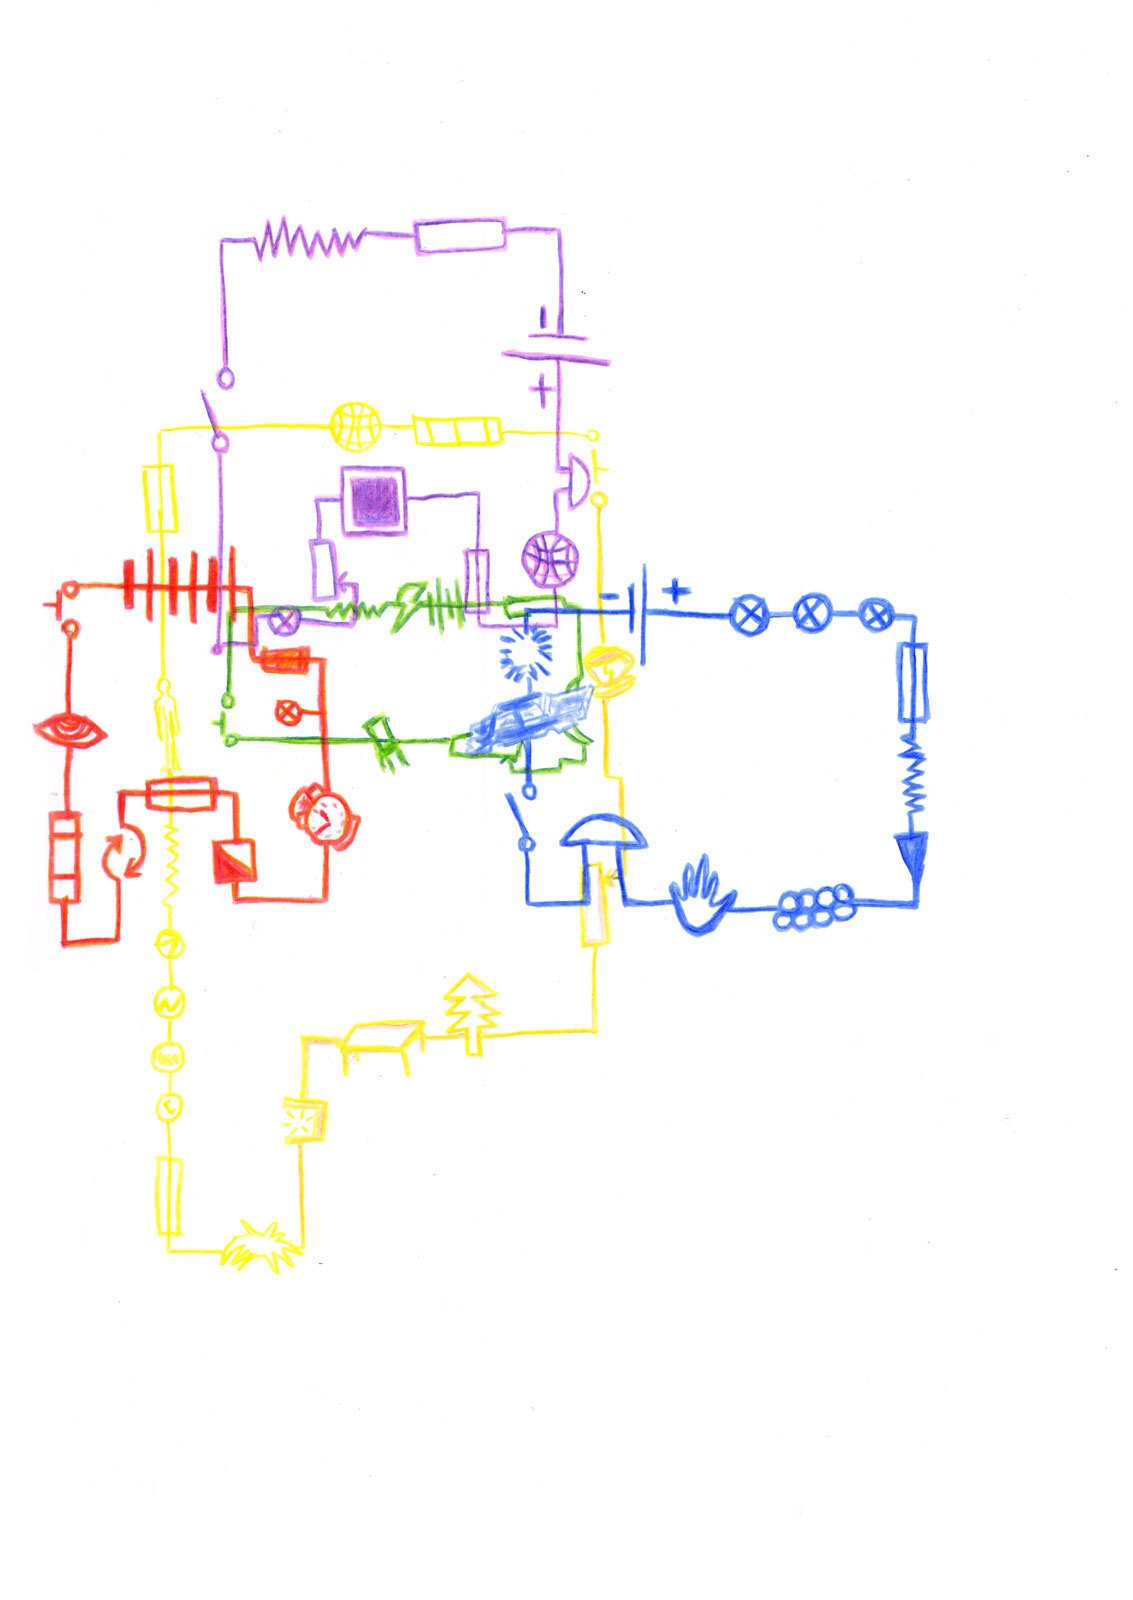 Яков Хорев. Electrical Circuit Arranged as an Apartment / Электрическая цепь в форме квартиры. 2020Бумага, цветные карандашиПредоставлено художником